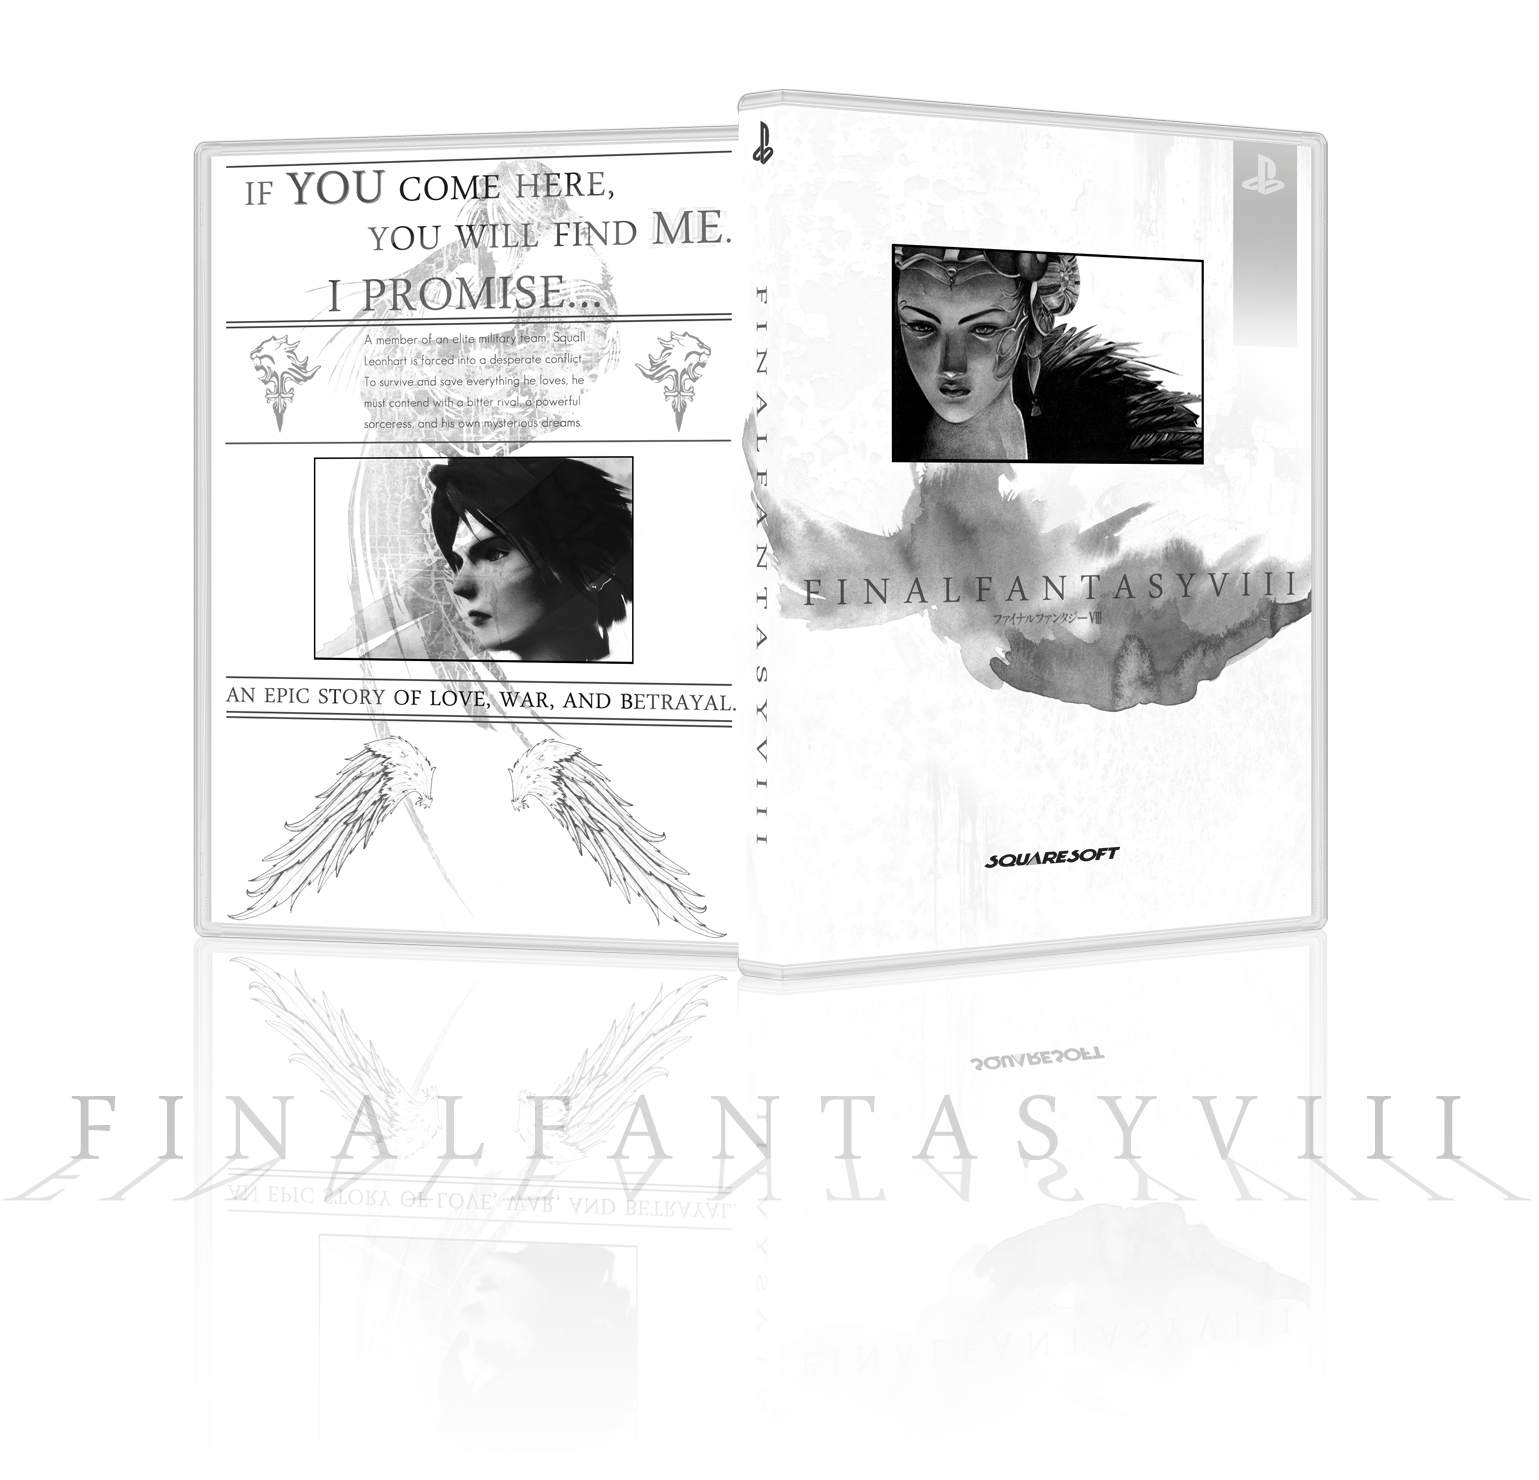 Final Fantasy VIII box cover